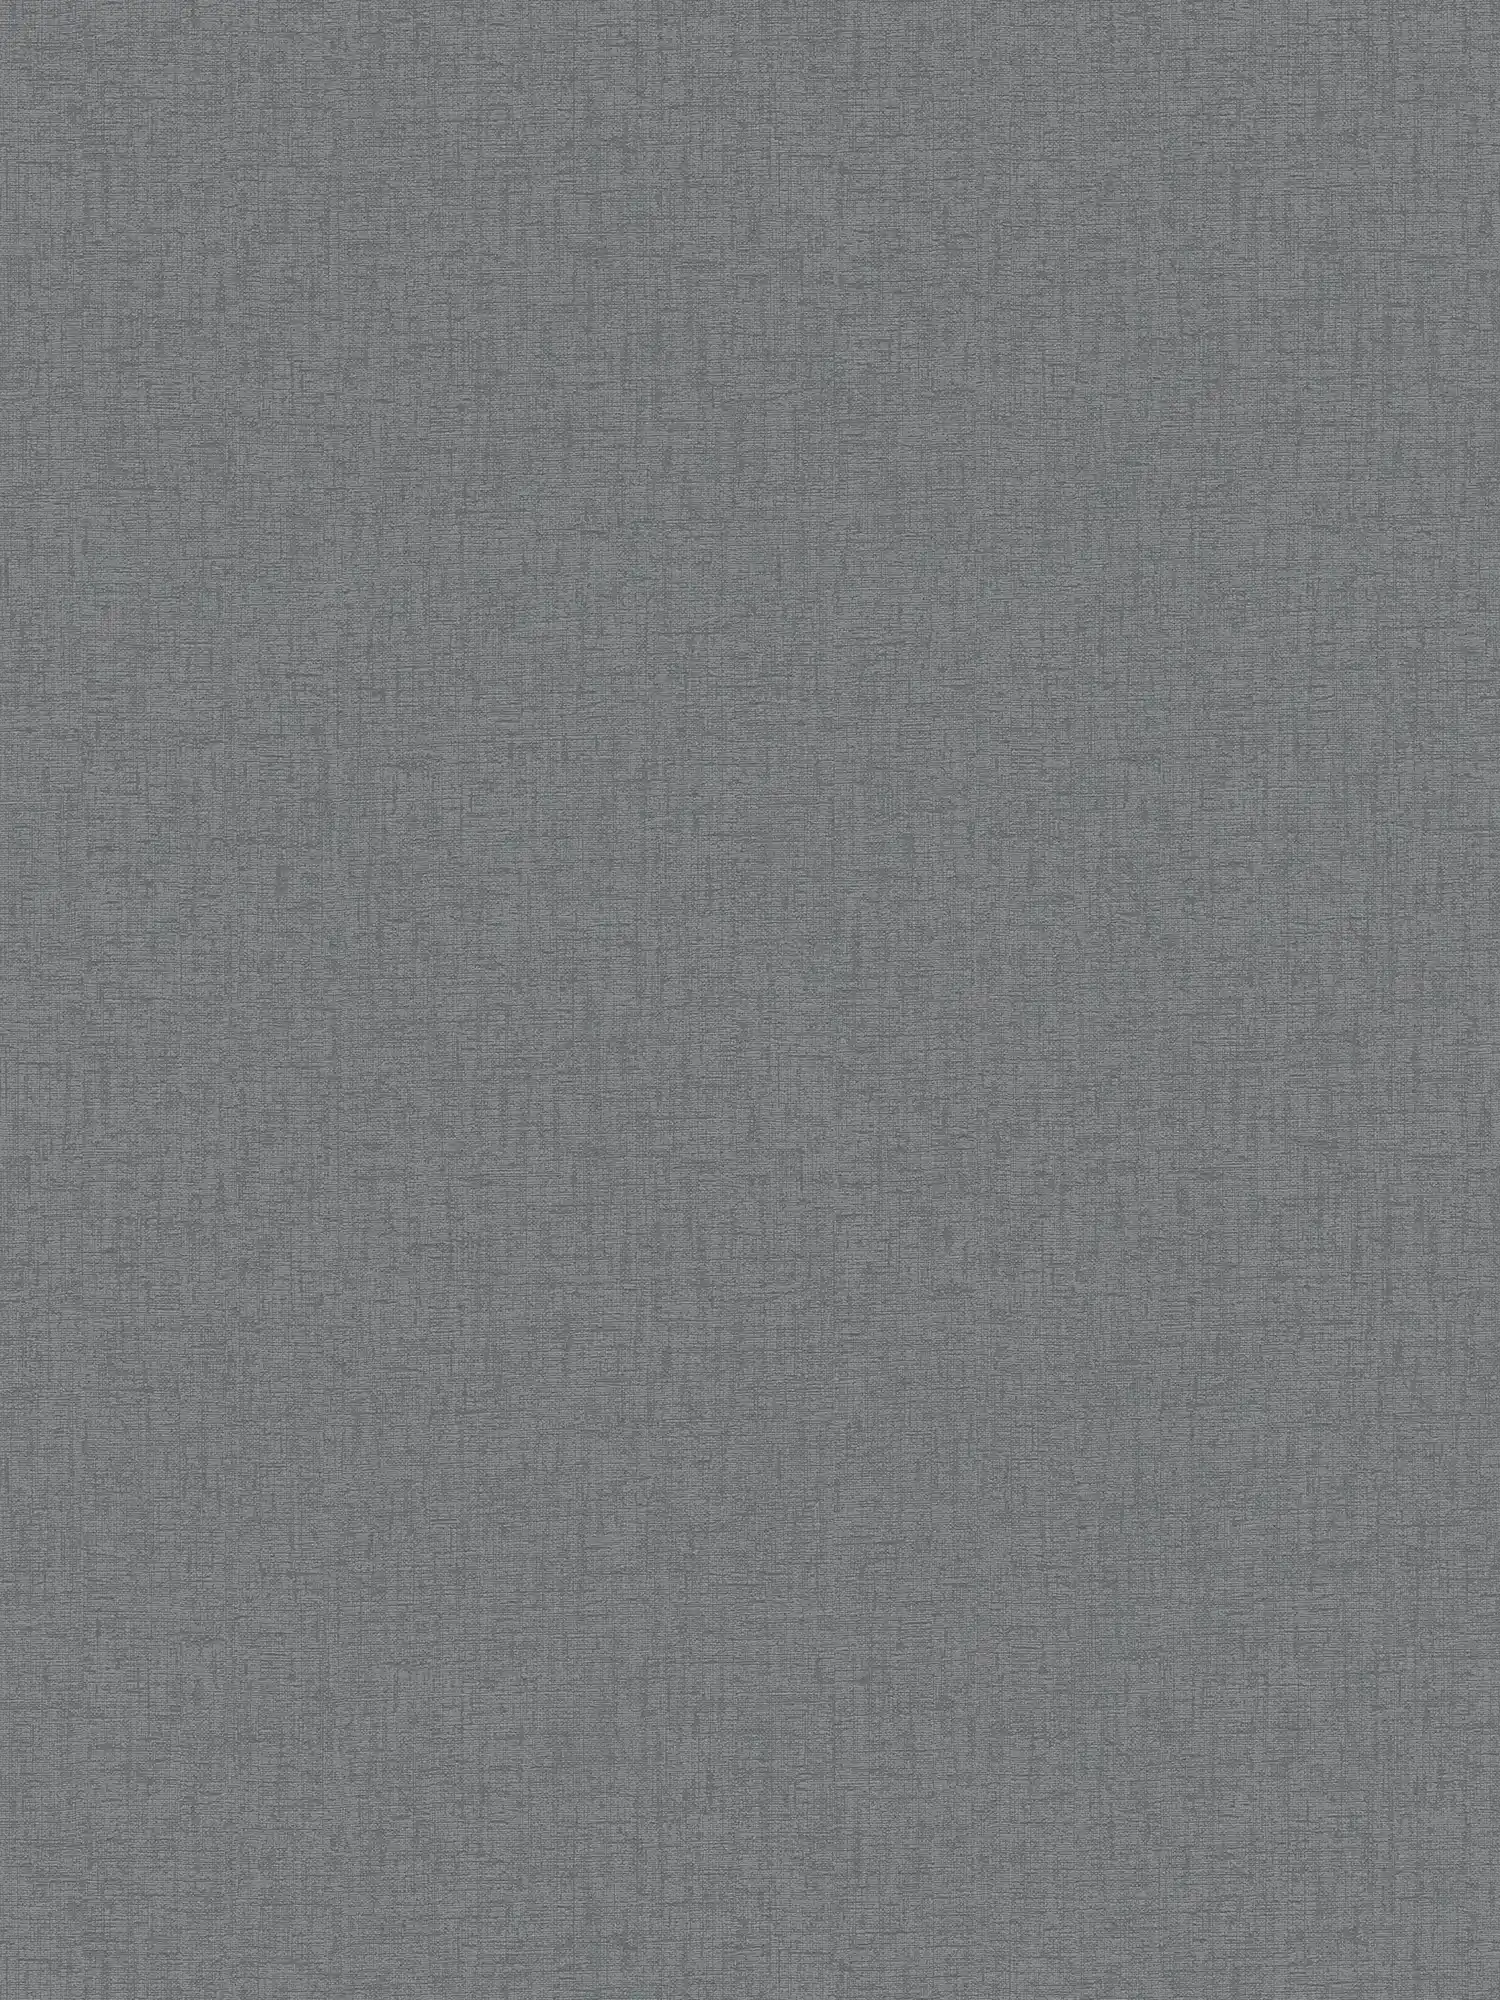 Einfarbige Vliestapete mit Textilstruktur – Anthrazit, Grau
